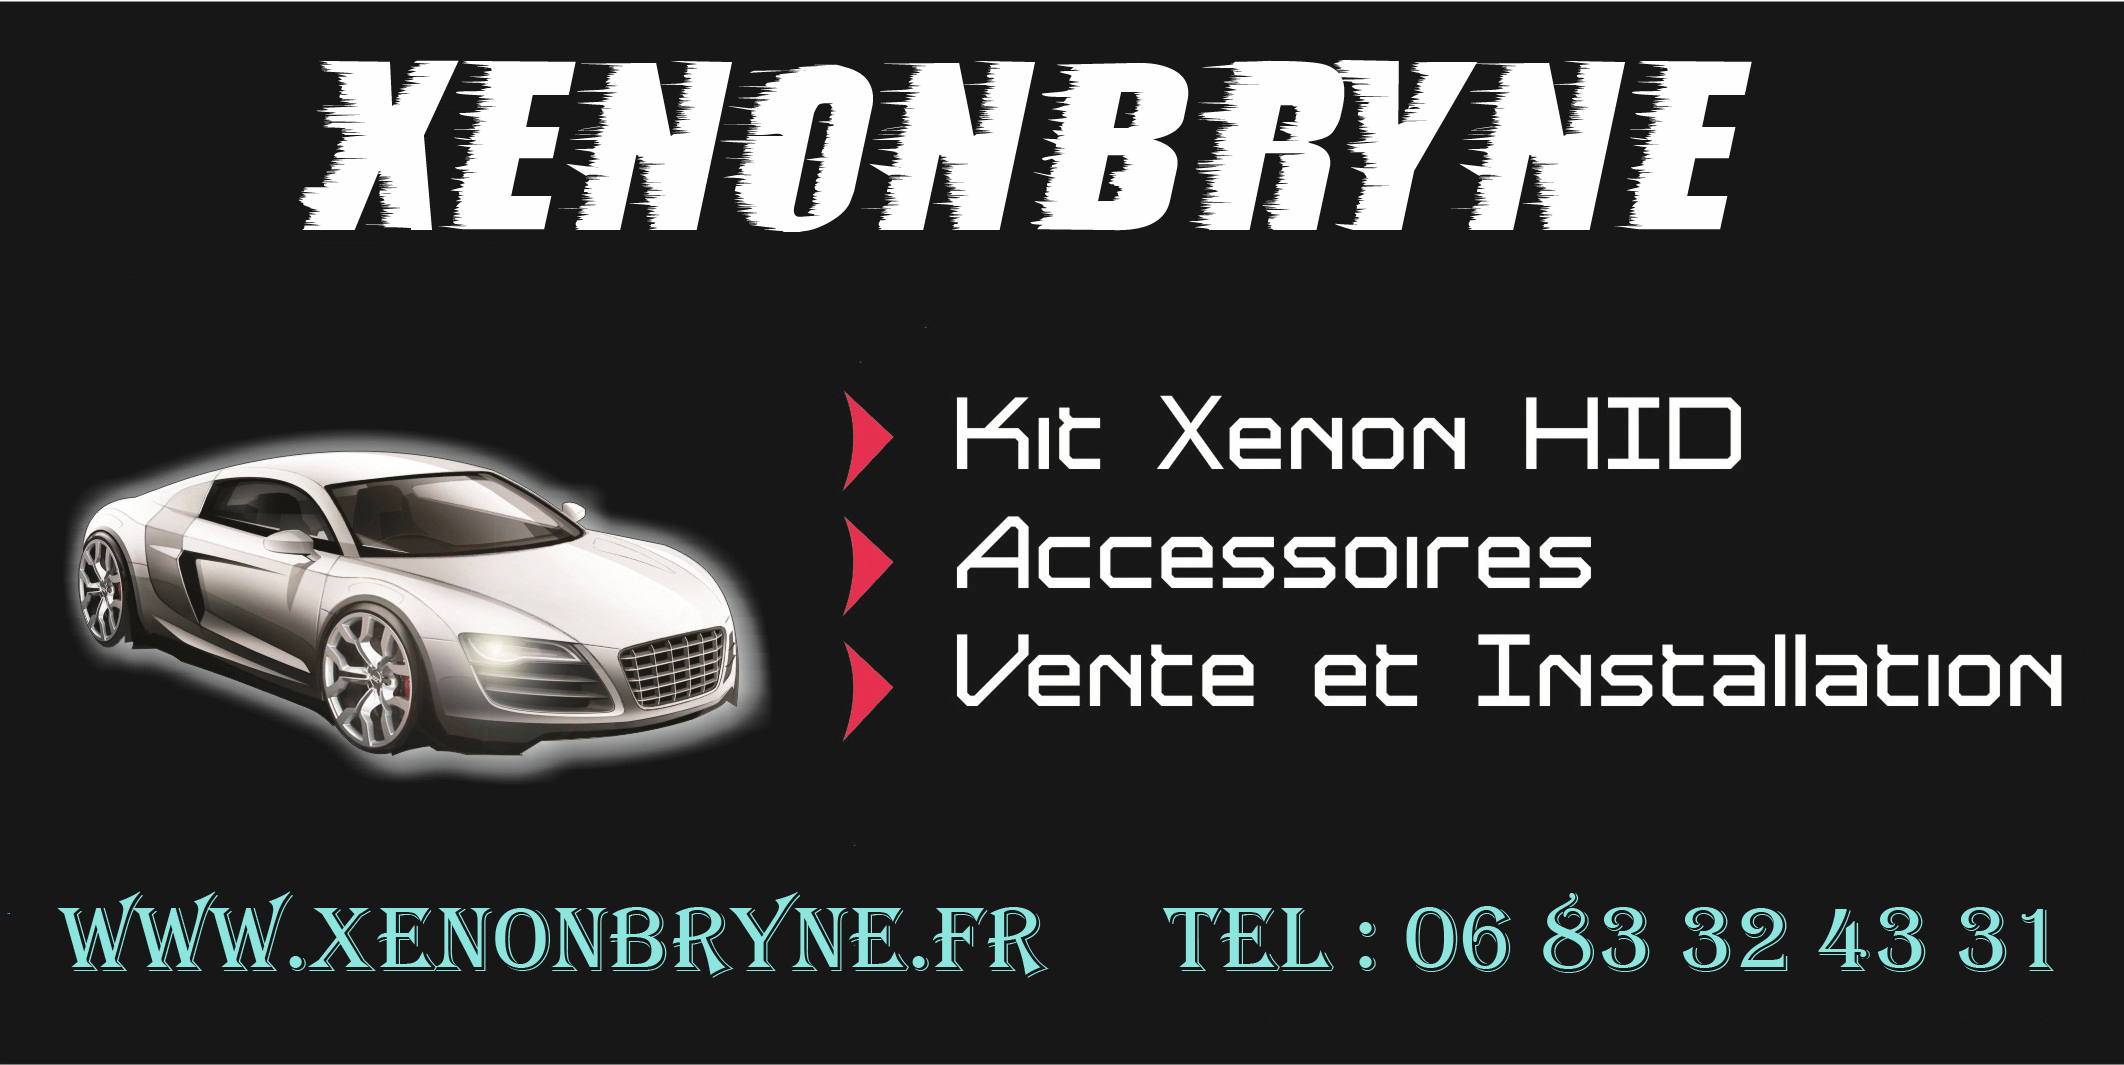 Kits Xenon HID - Accessoires - Vente et Installation